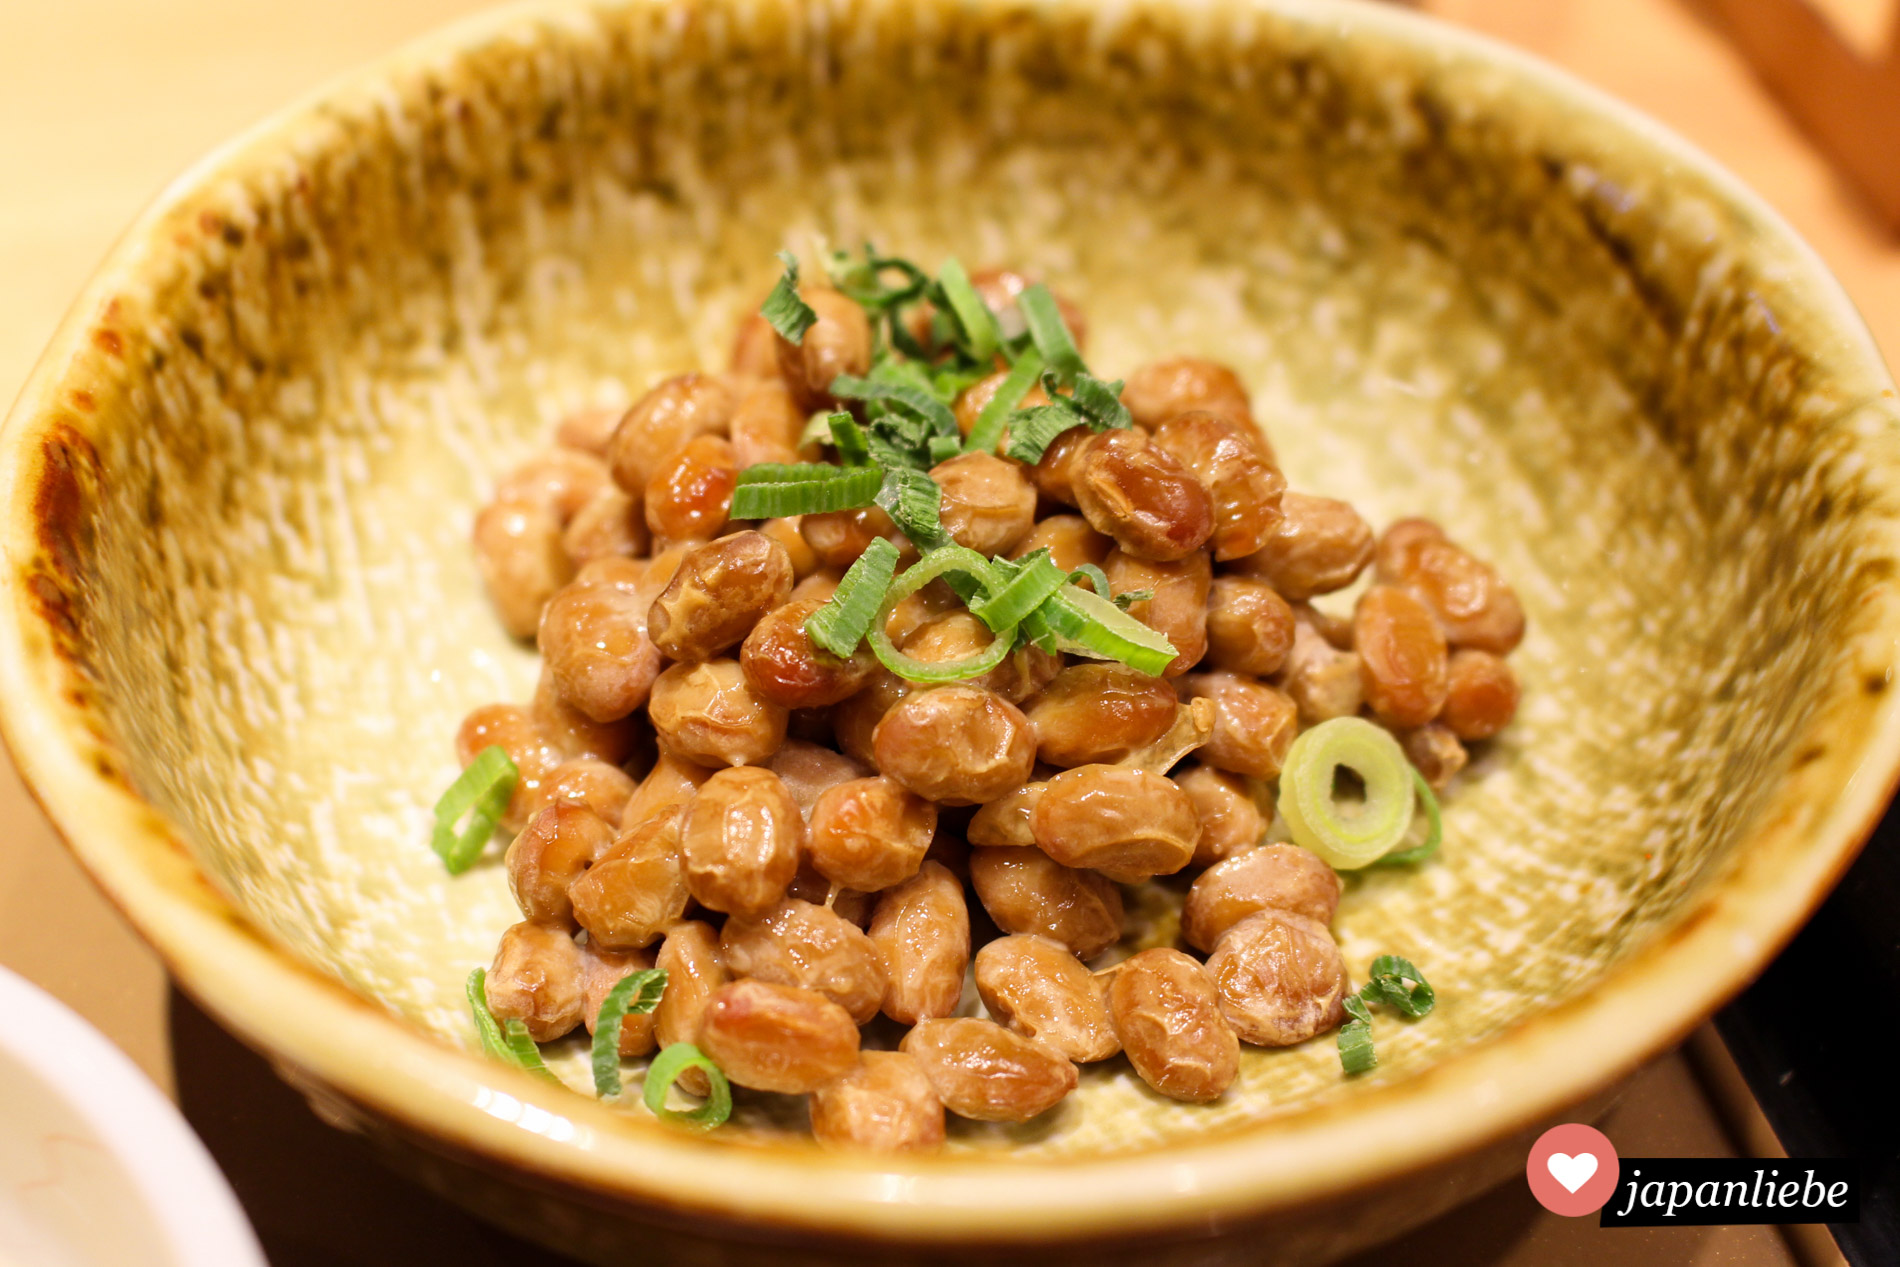 Ausländerschreck nattō: die vermentierten Sojabohnen schmecken lecker, wenn man den hefigen Geschmack mag. Geruch und Konsistenz sind eher gewöhnungsbedürftig.